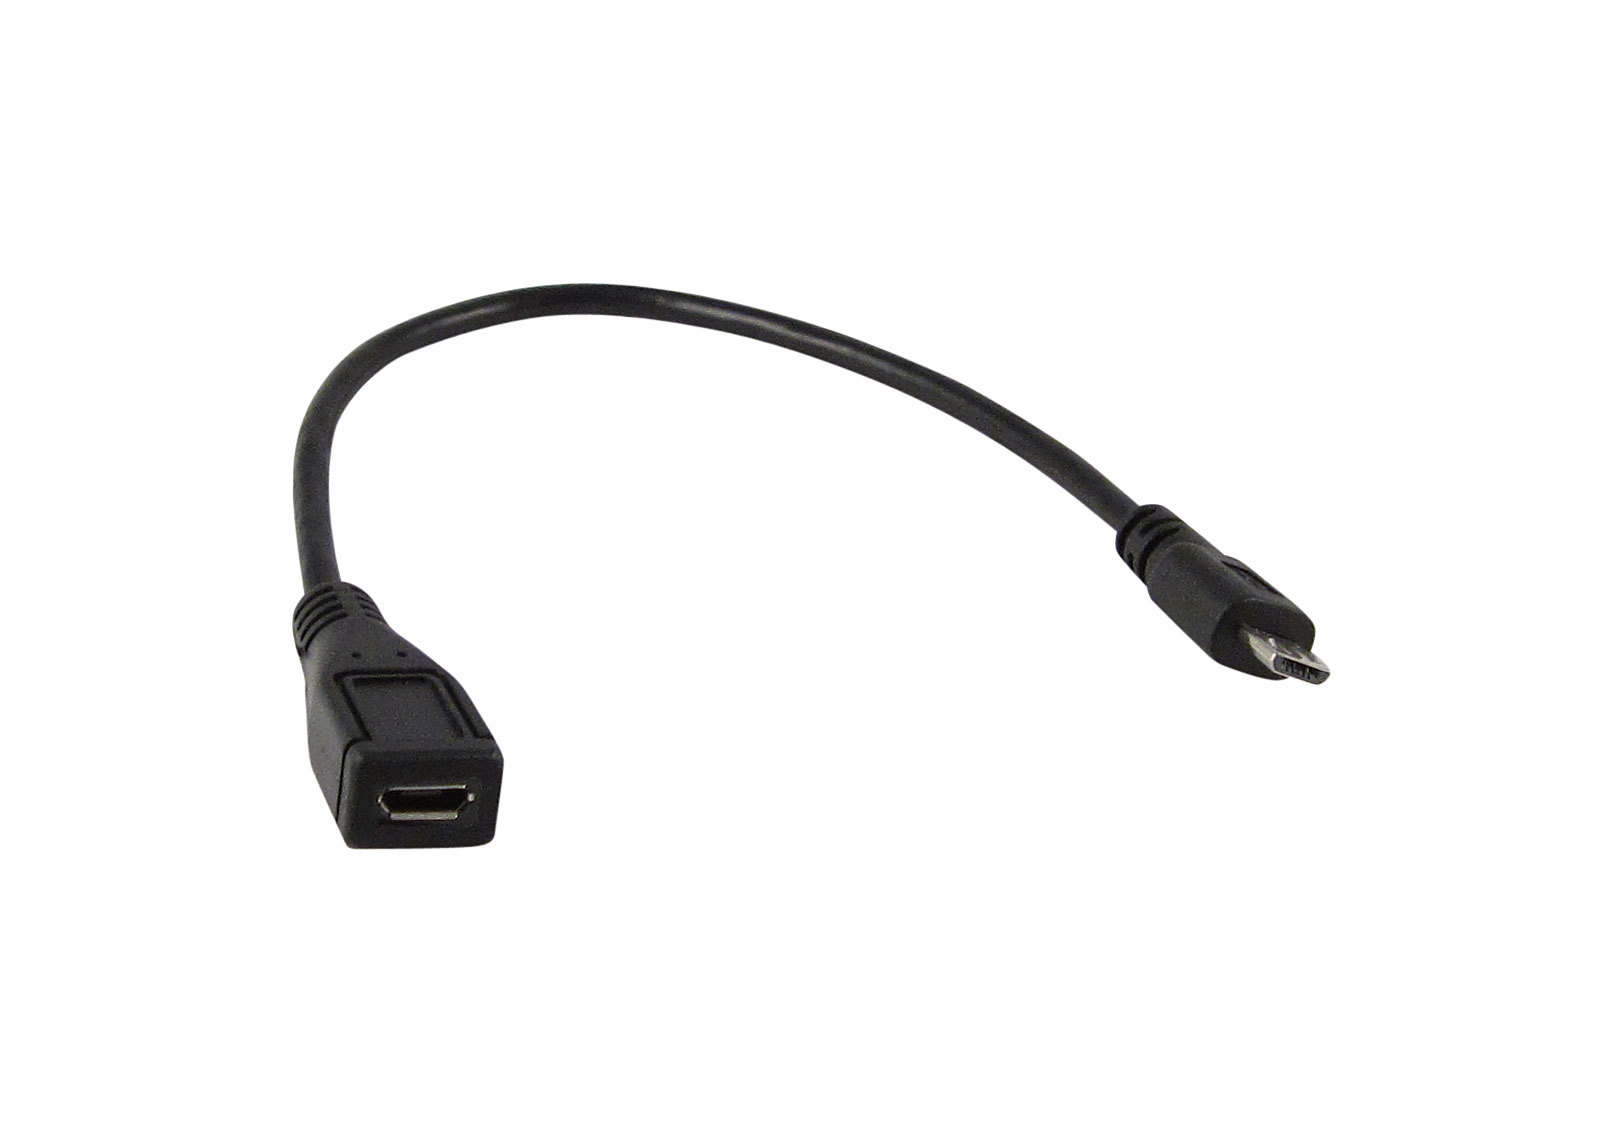 Micro USB 2.0 prodlužovací kabel F - M, 3A, 20cm